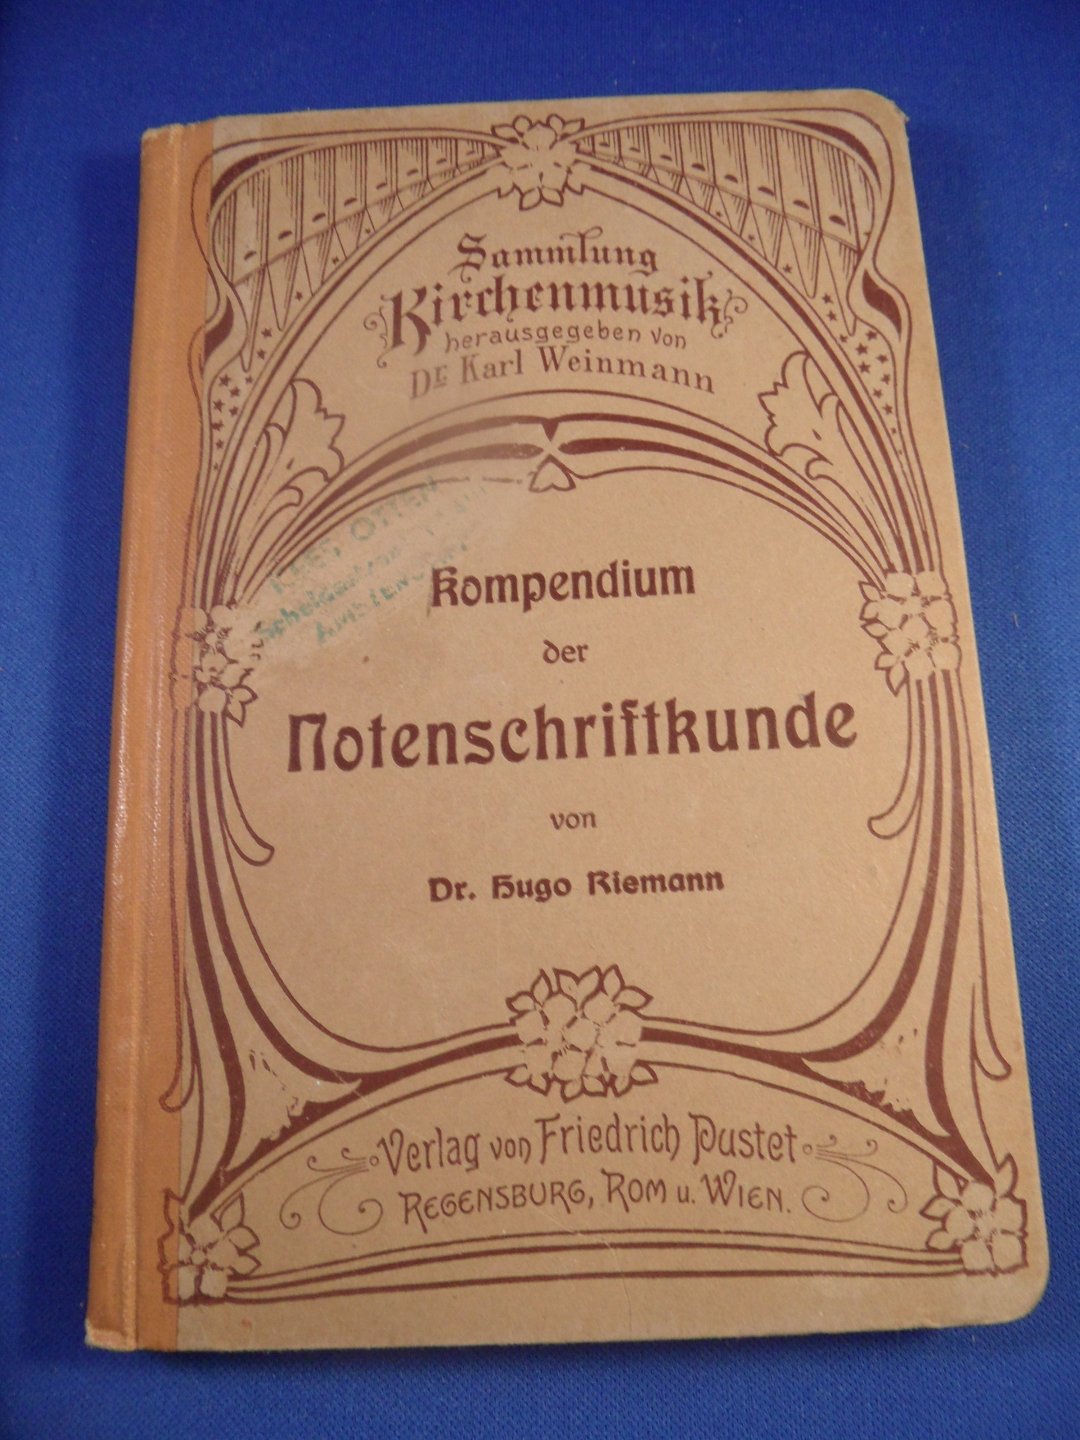 Riemann, hugo - kompendium der notenschriftkunde,